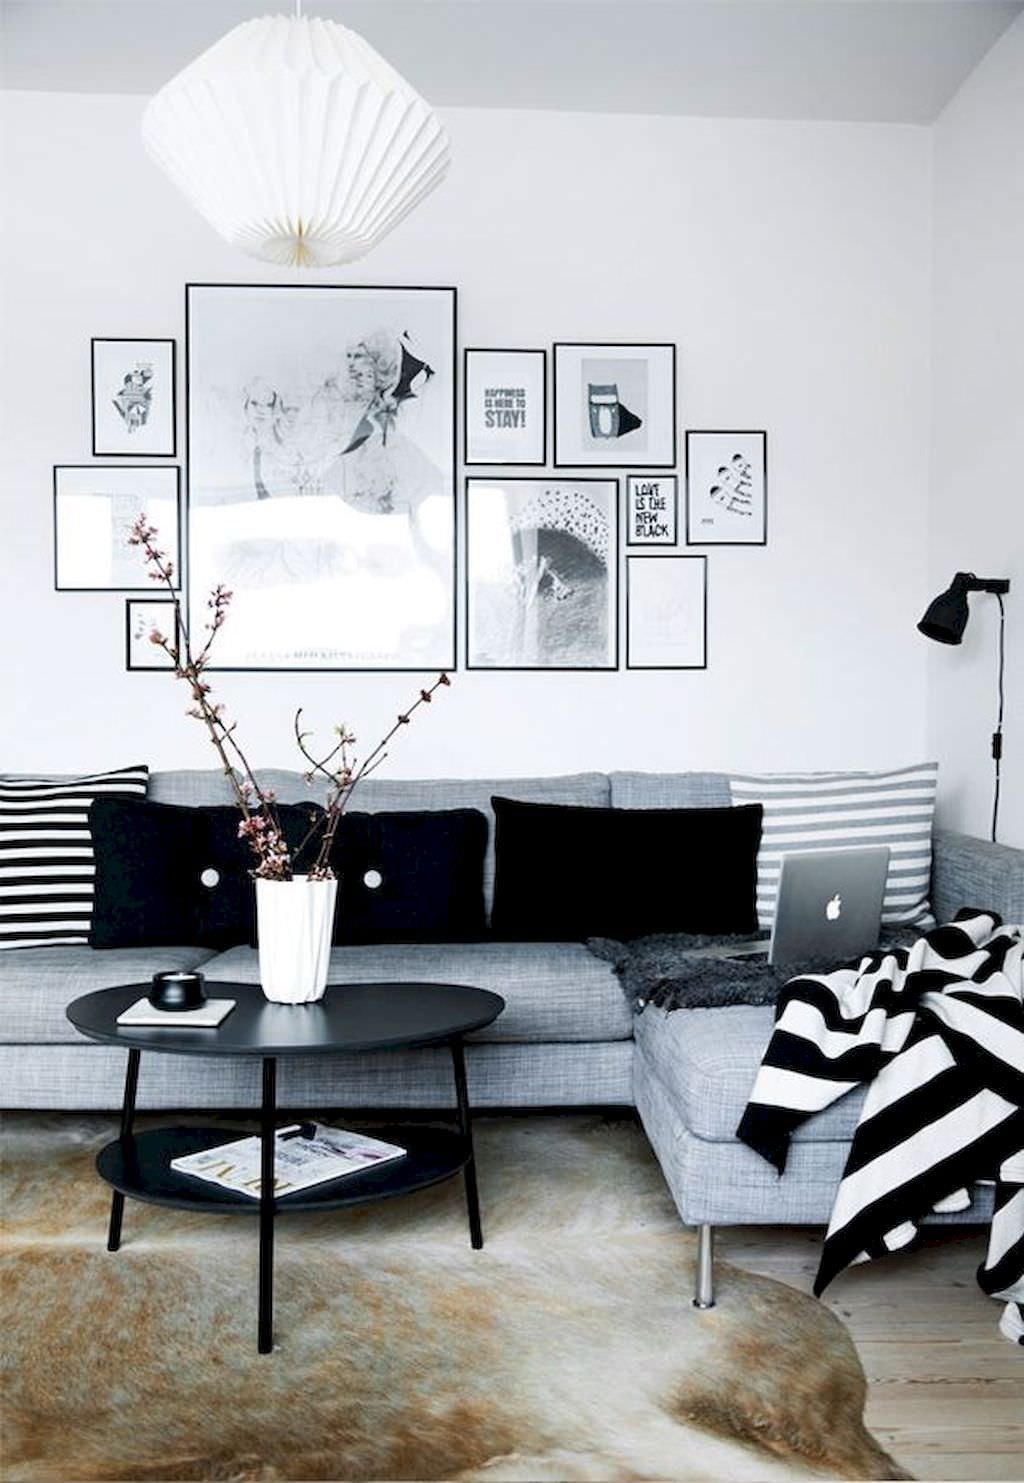 Salotto nordico in tonalità di bianco, nero e grigio, semplice ed essenziale. Pavimento in legno e tappeto in pelle animale, tipico dei paesi nordici